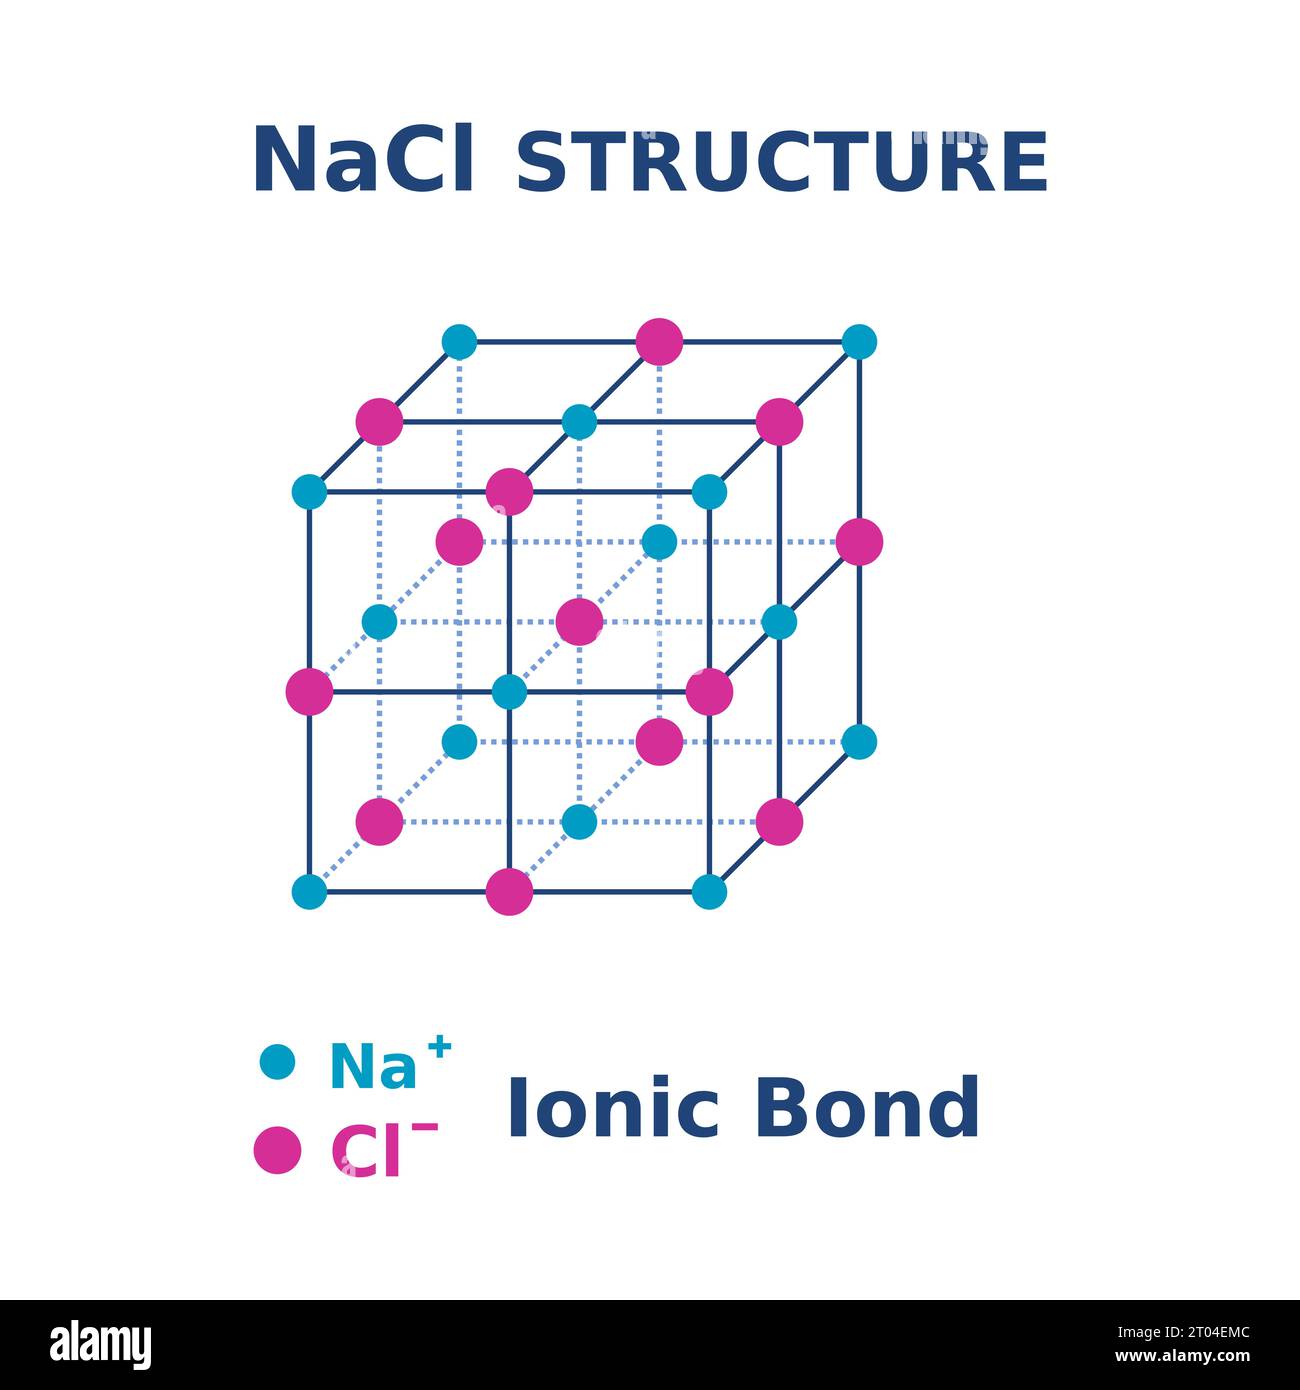 NaCl-Struktur. Natriumchloridmolekül. Salzkristalle. Ionenbindung in 3D-Form. Chemieausbildung. Gitter und Einheitszellen von Salz. Vektor Stock Vektor